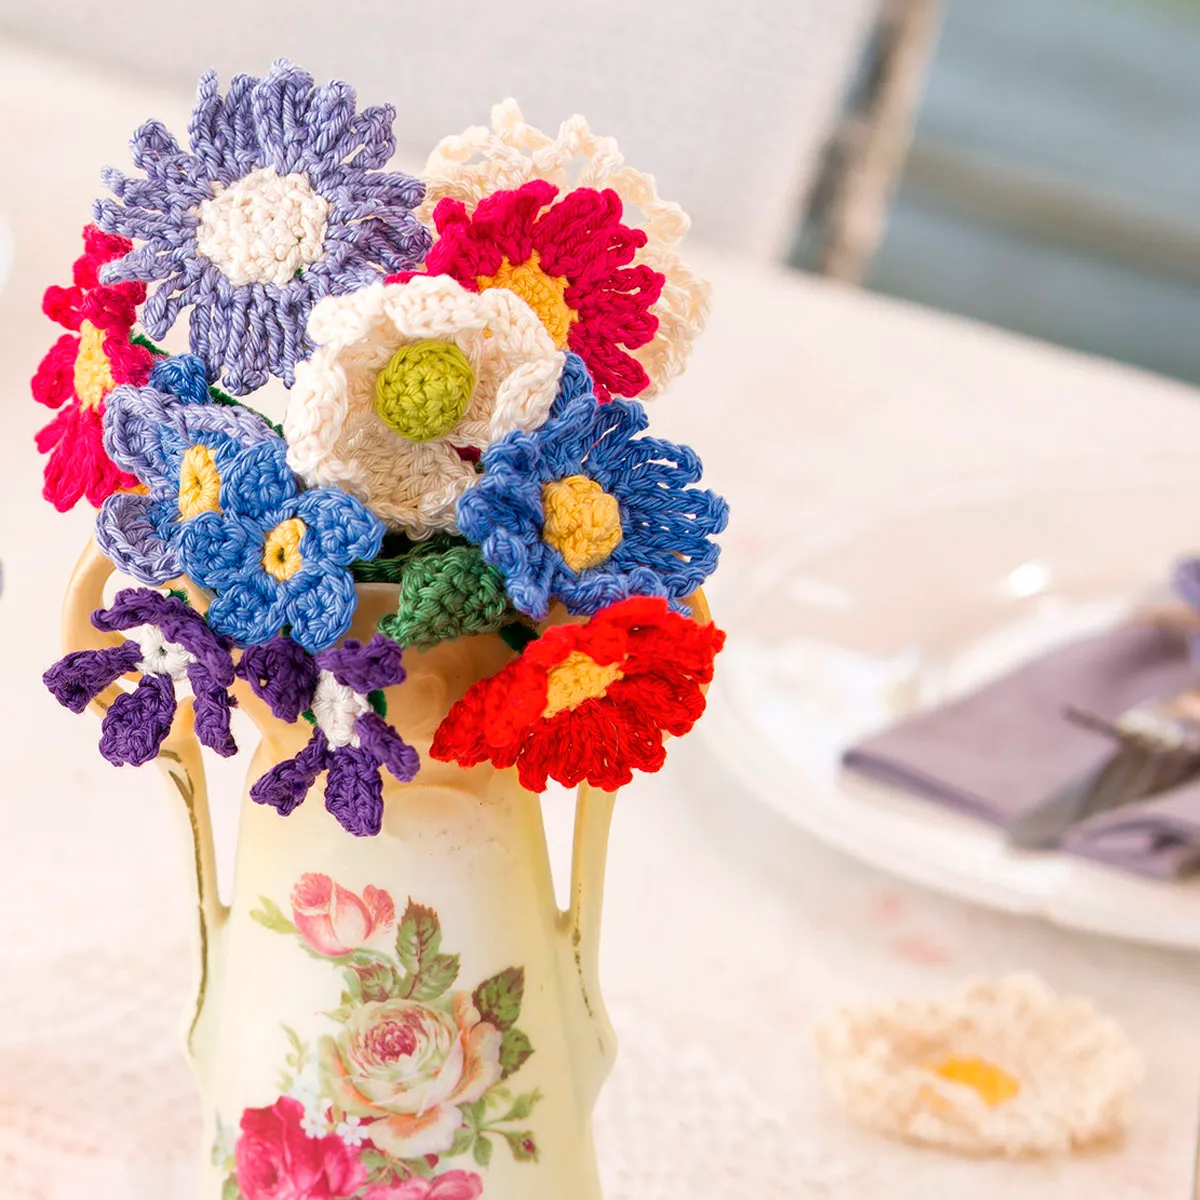 Crochet bouquet of flowers in a vase